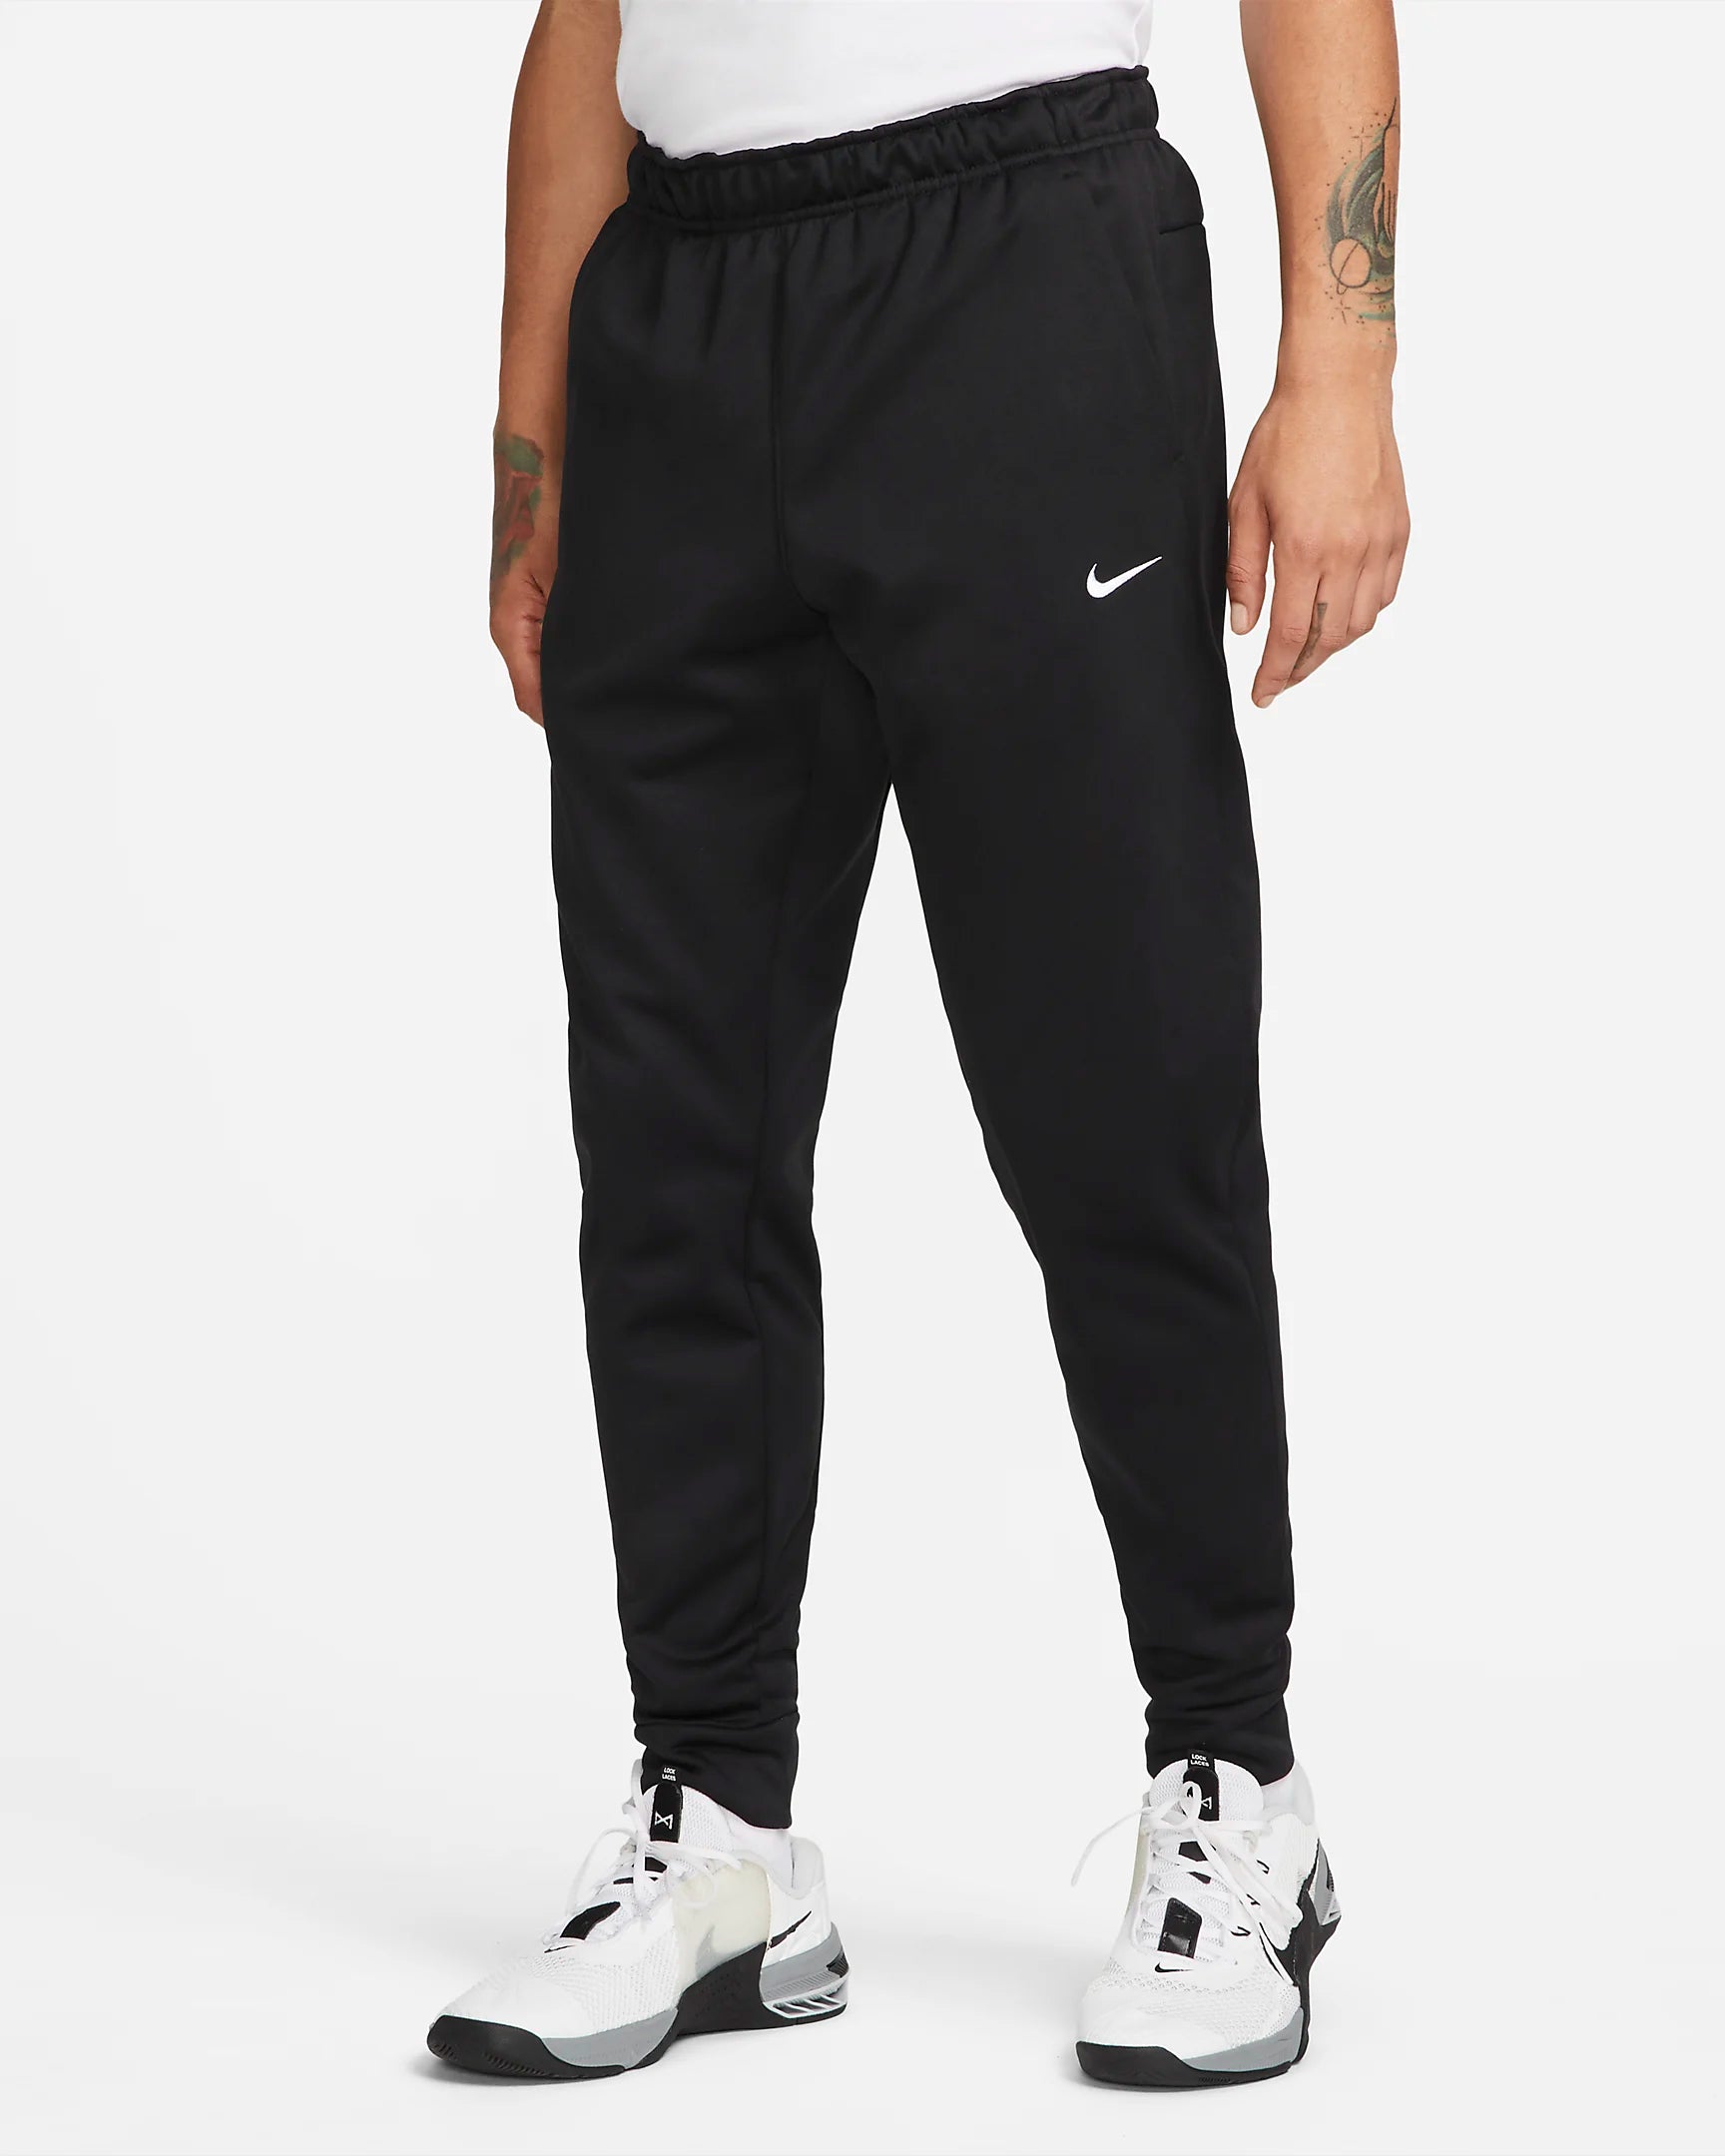 Pantalon Nike Therma - Noir